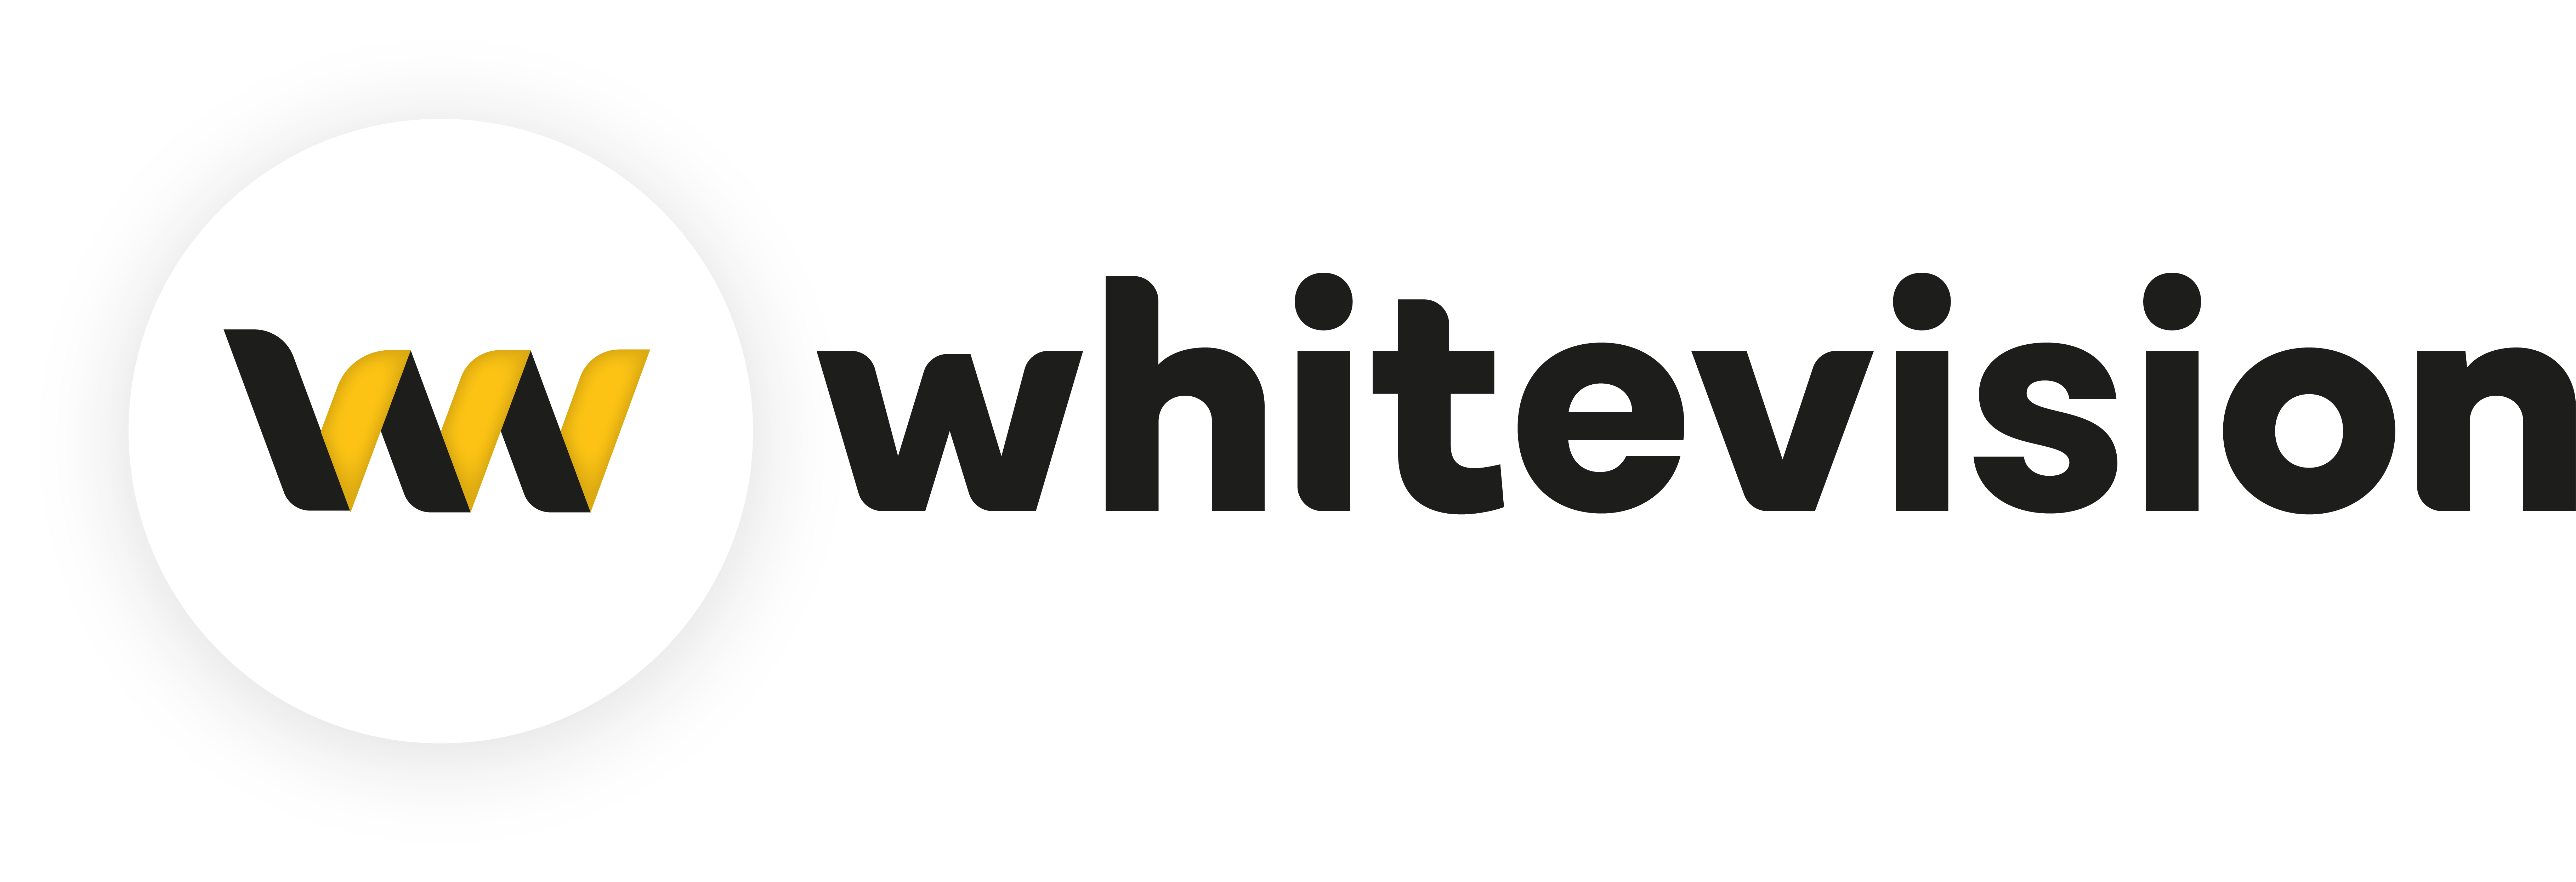 Whitevision-basis-logo-geel-rgb-zwart